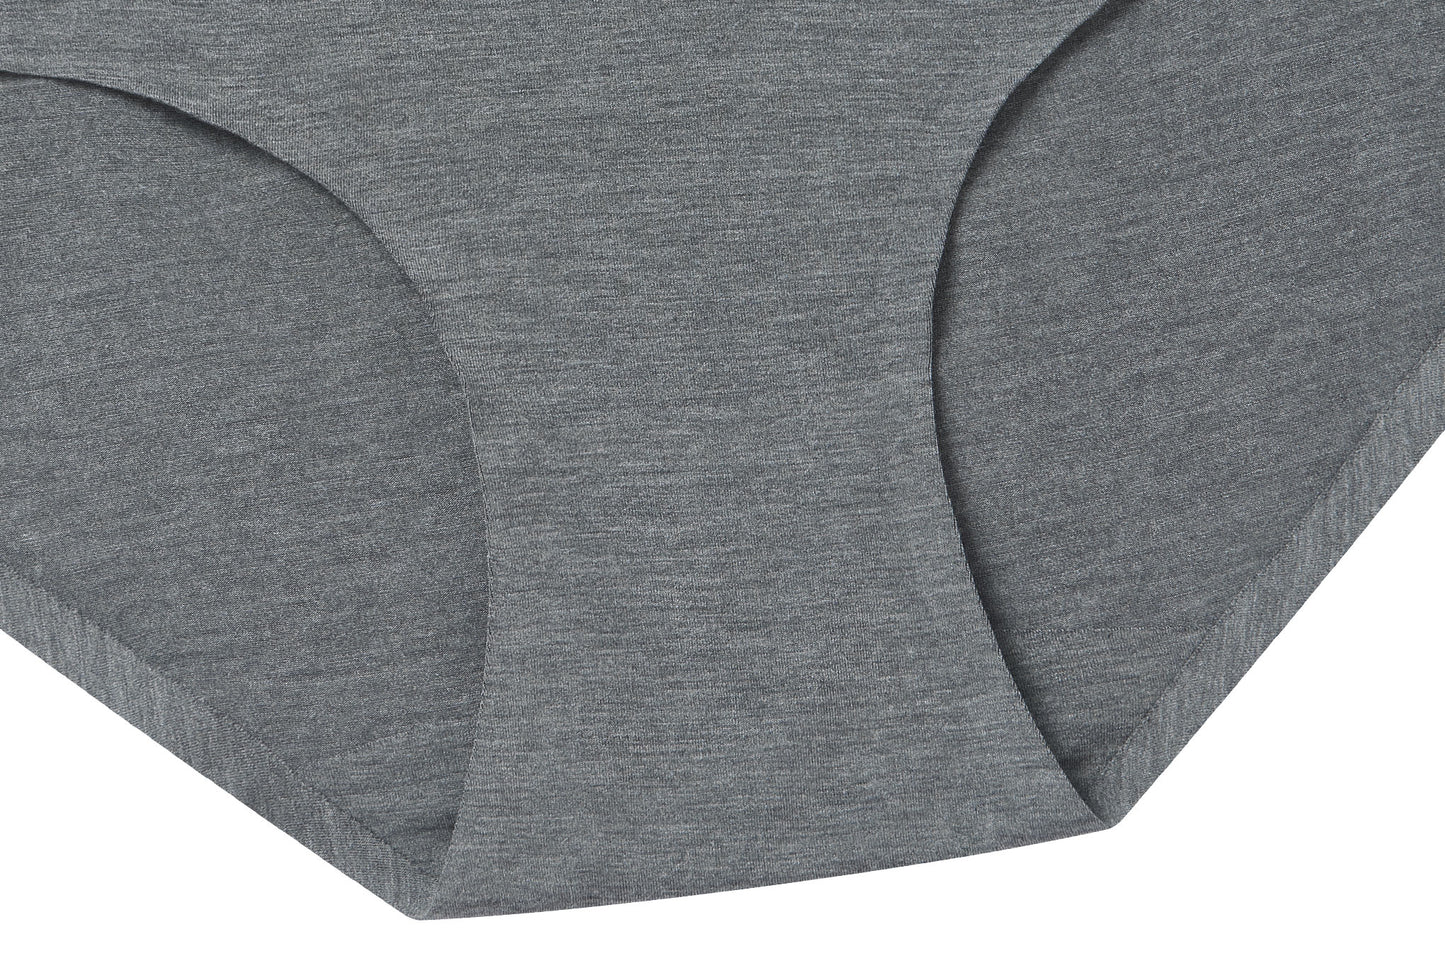 2-pack Medium Shape Thong Briefs - Gray/dark gray - Ladies